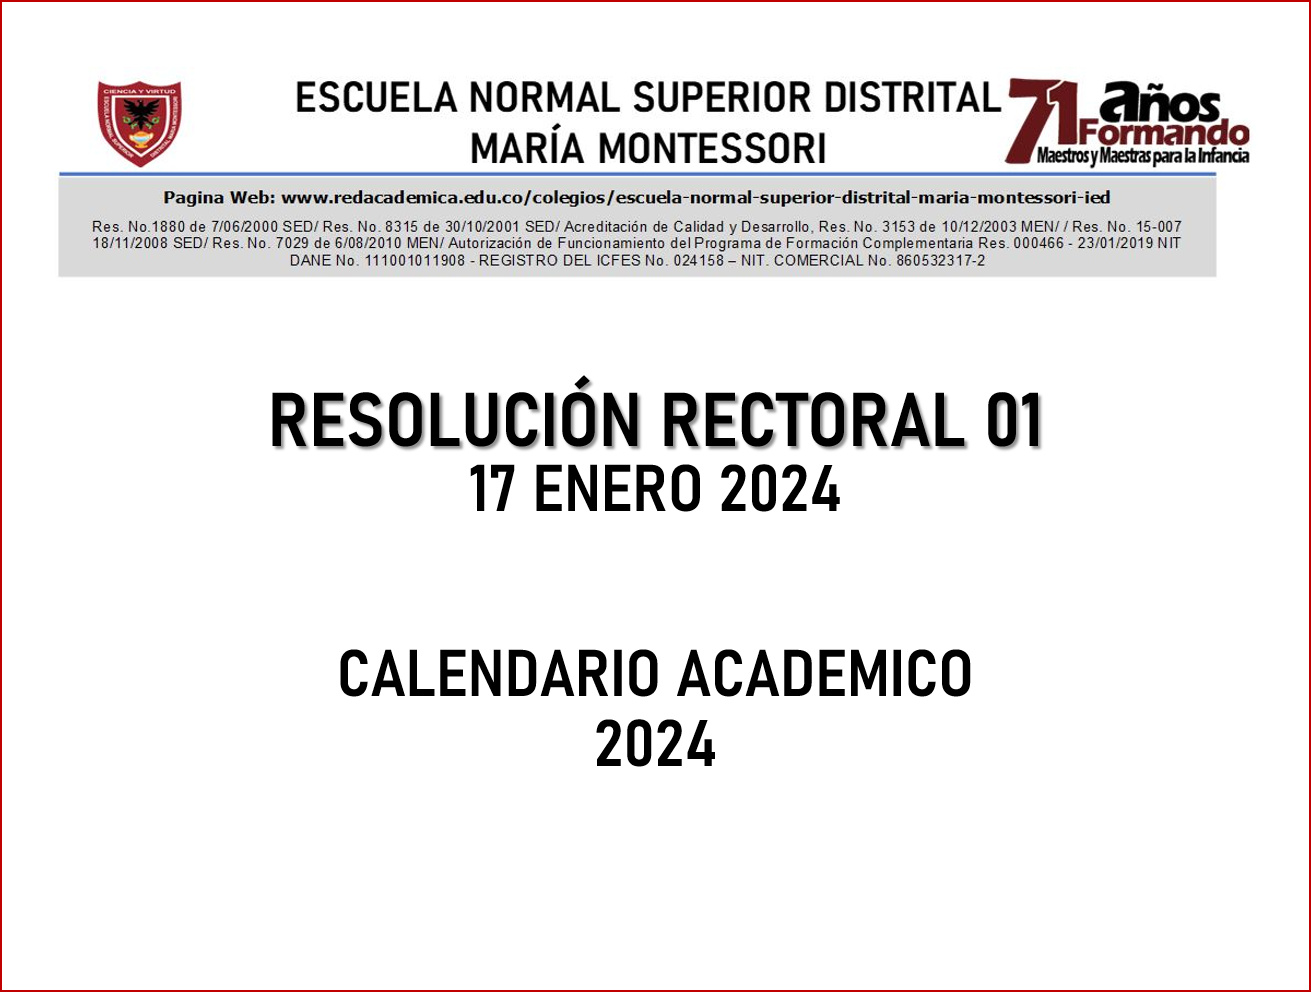 RESOLUCIÓN RECTORAL No. 1 - CALENDARIO ESCOLAR 2024